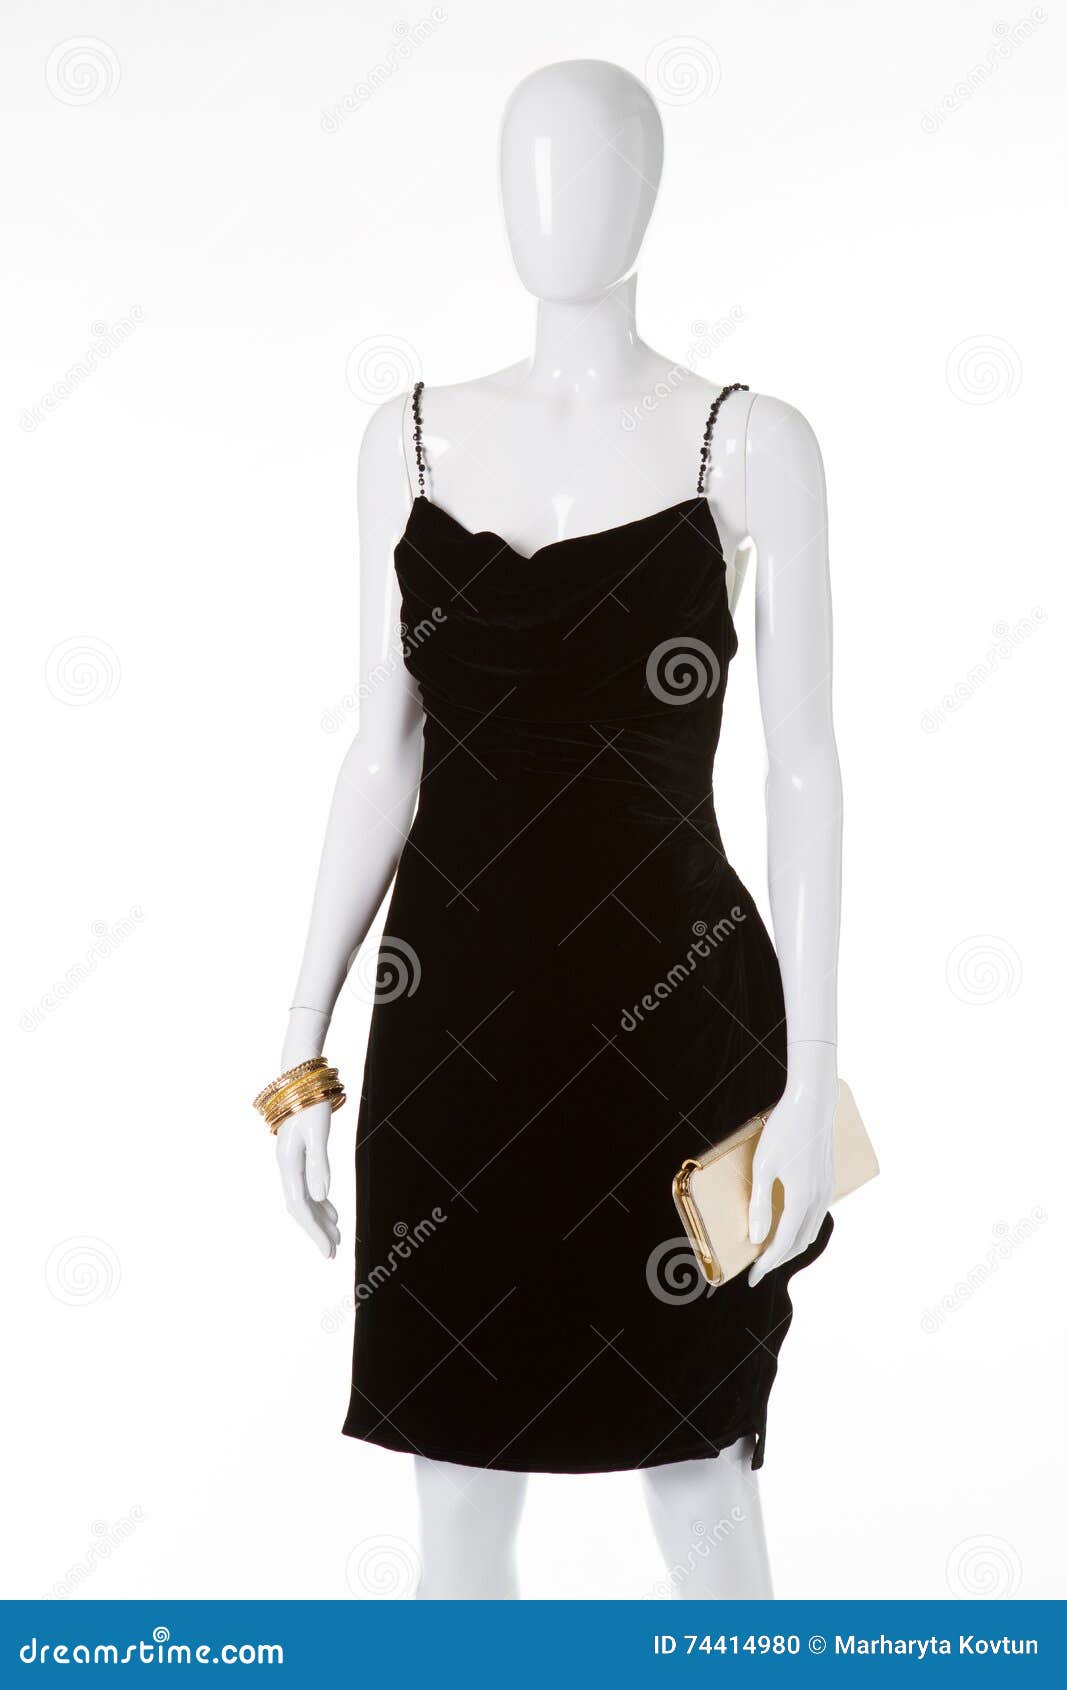 black velvet dress on white mannequin.